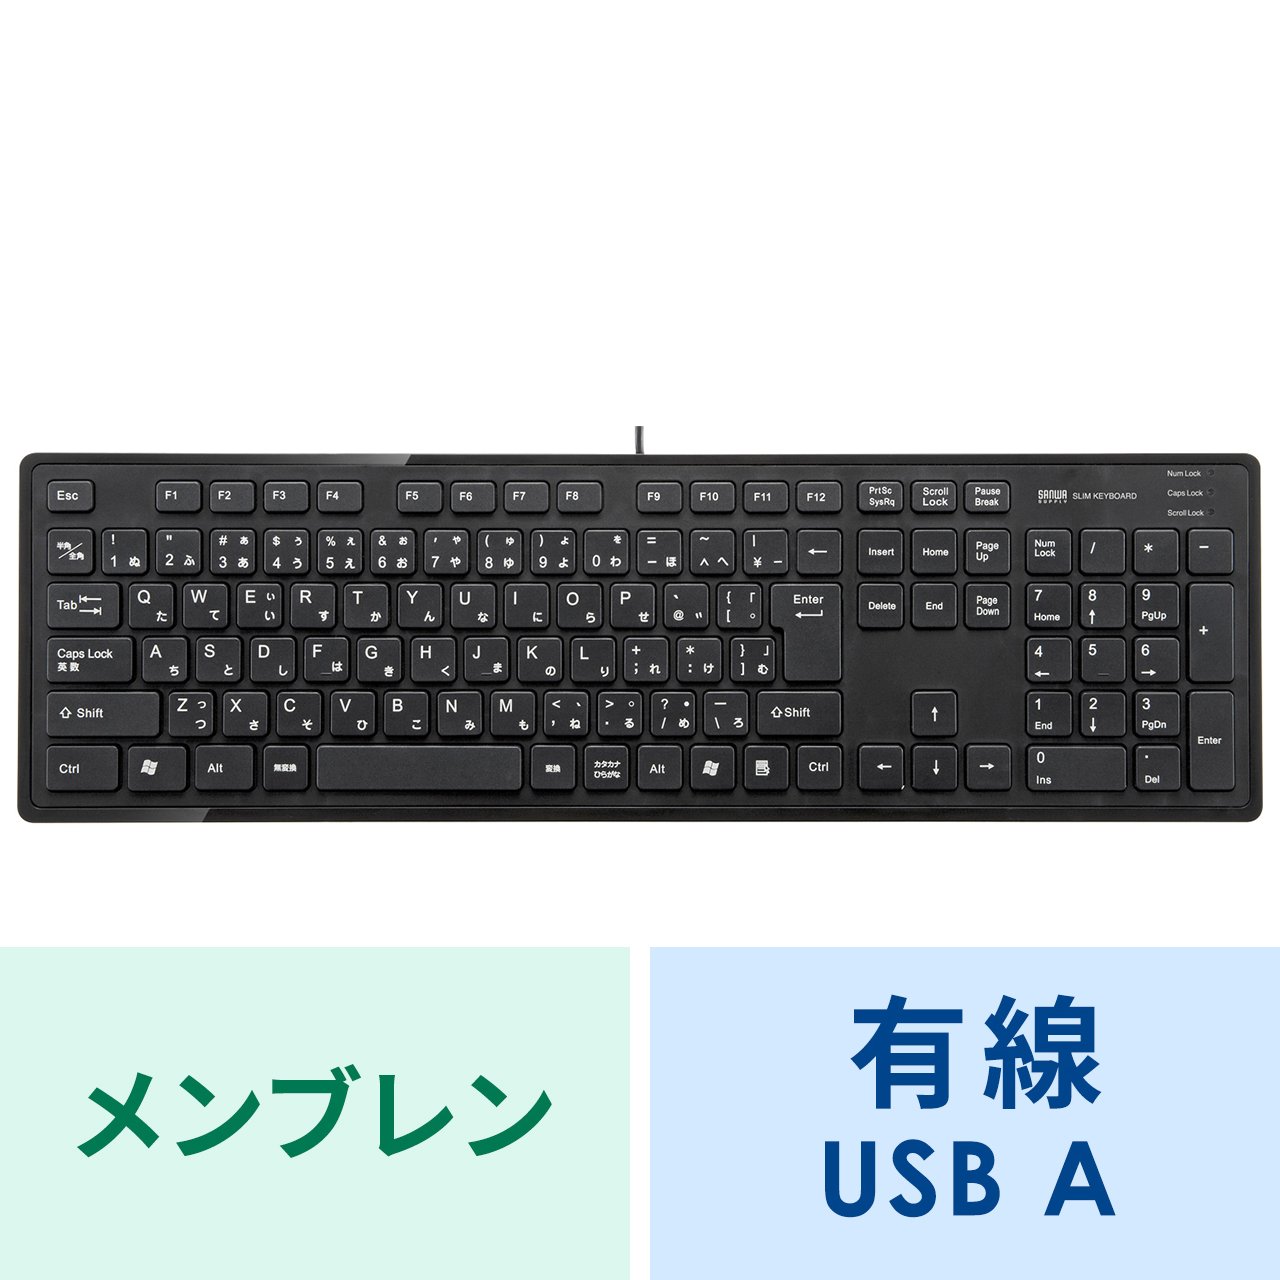 有線キーボード(USB A) テンキーあり メンブレン 日本語配列(JIS